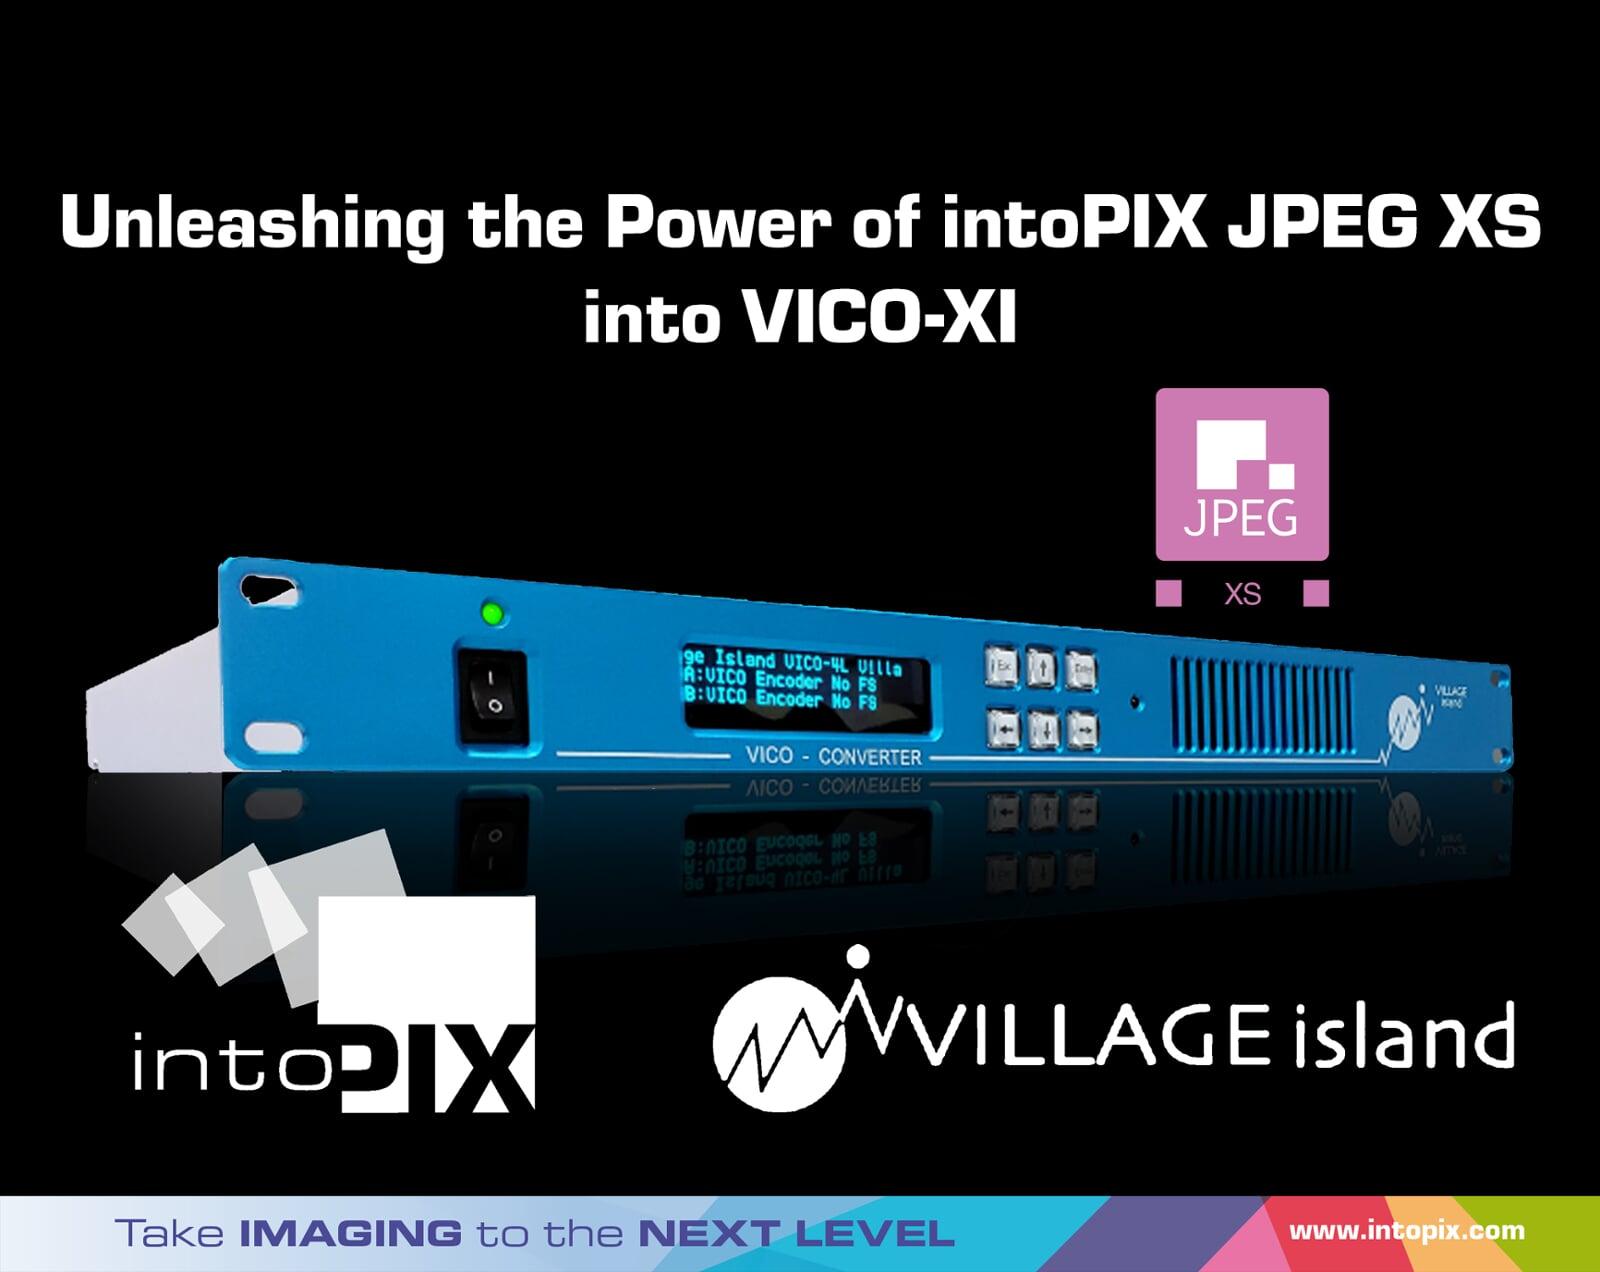 Village Island社のVICO-XIは、intoPIXの技術を使った帯域削減とマイクロ秒遅延でIP Video Conversionに革命を起こしています。